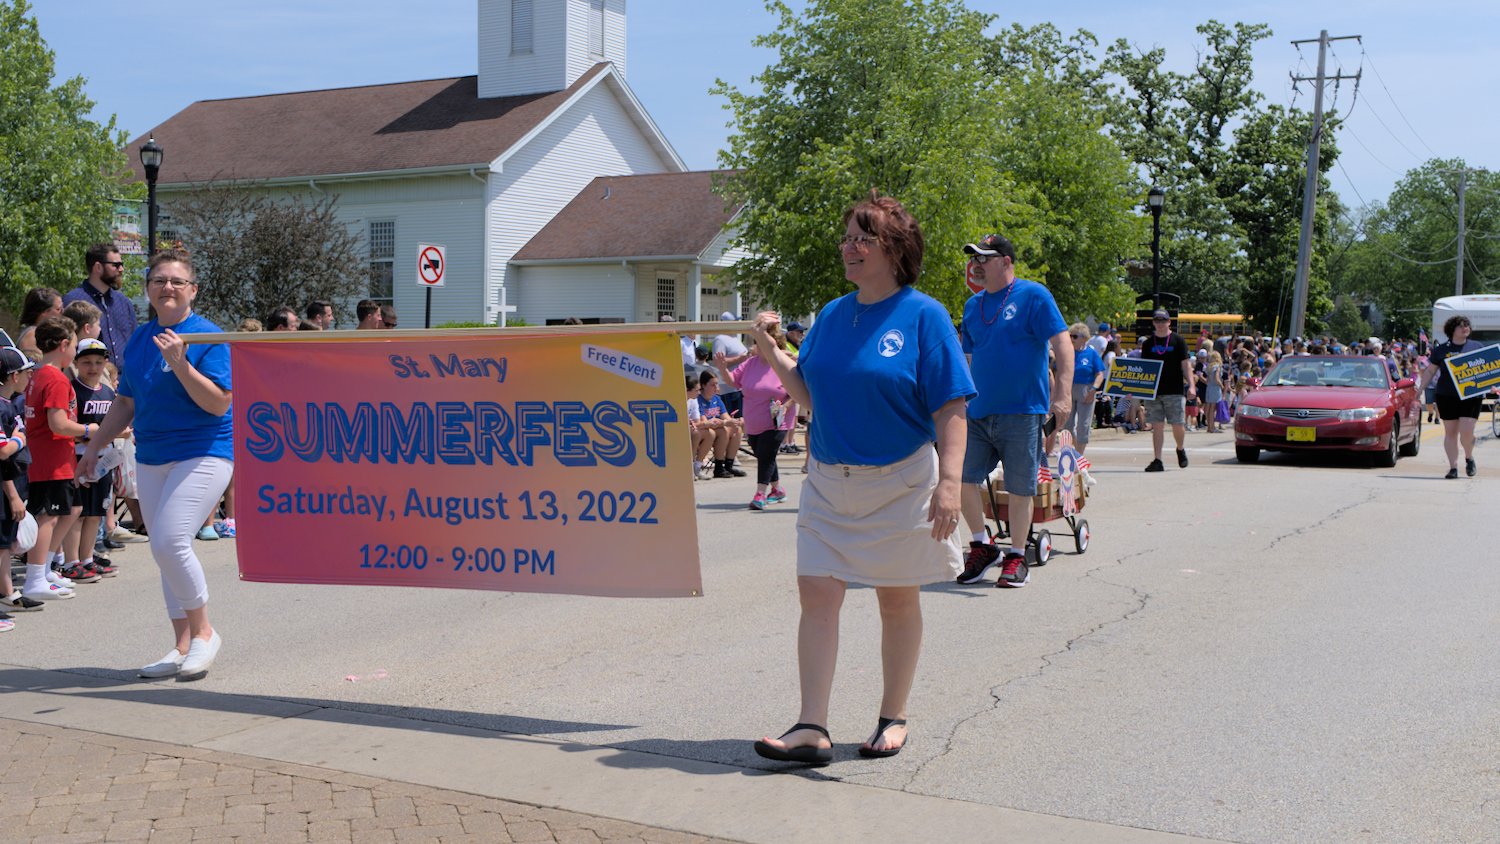 St. Mary's Summerfest banner.